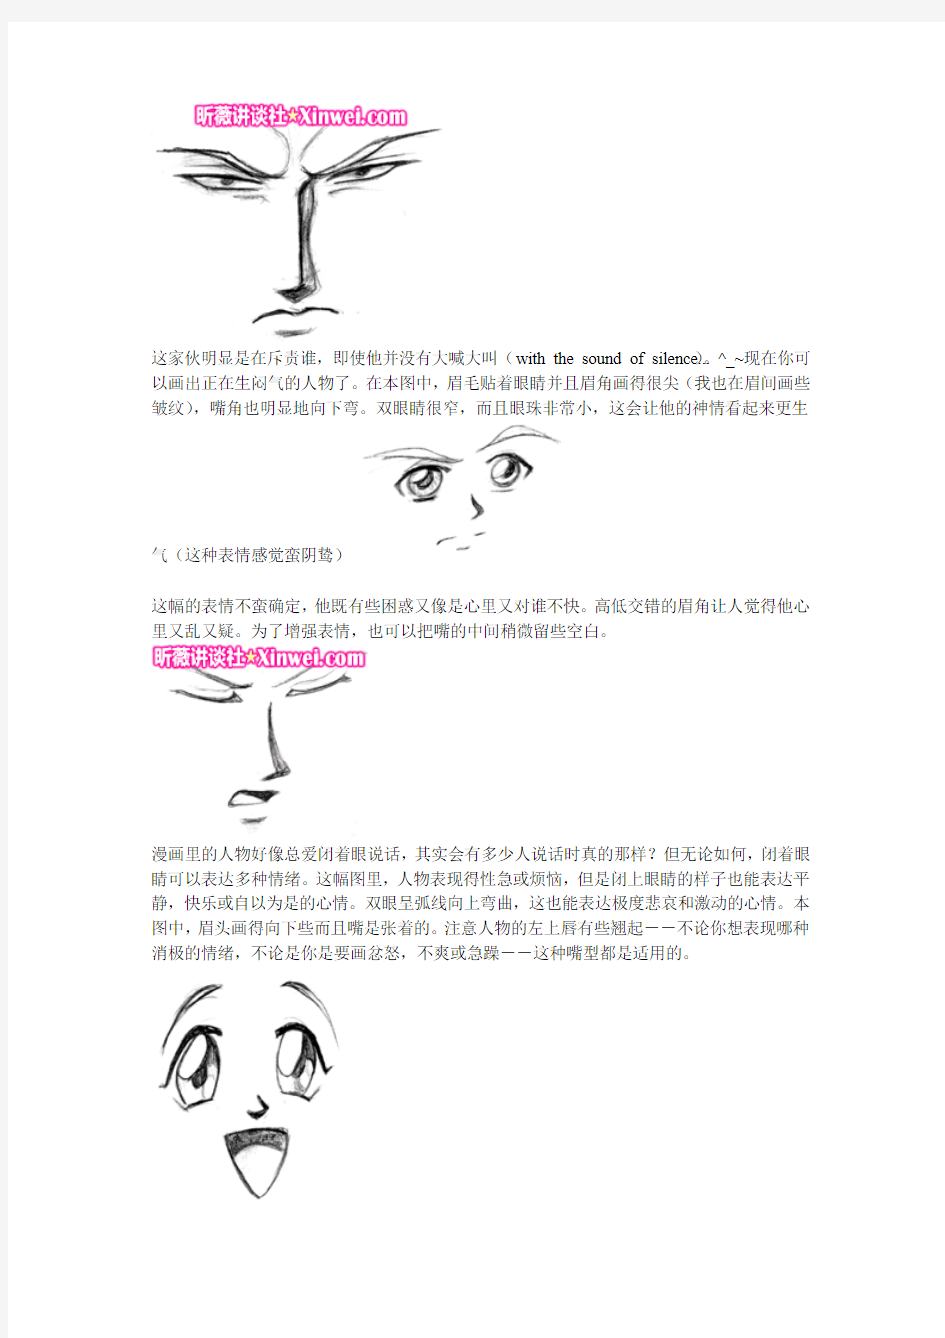 漫画技巧-PDF打印版